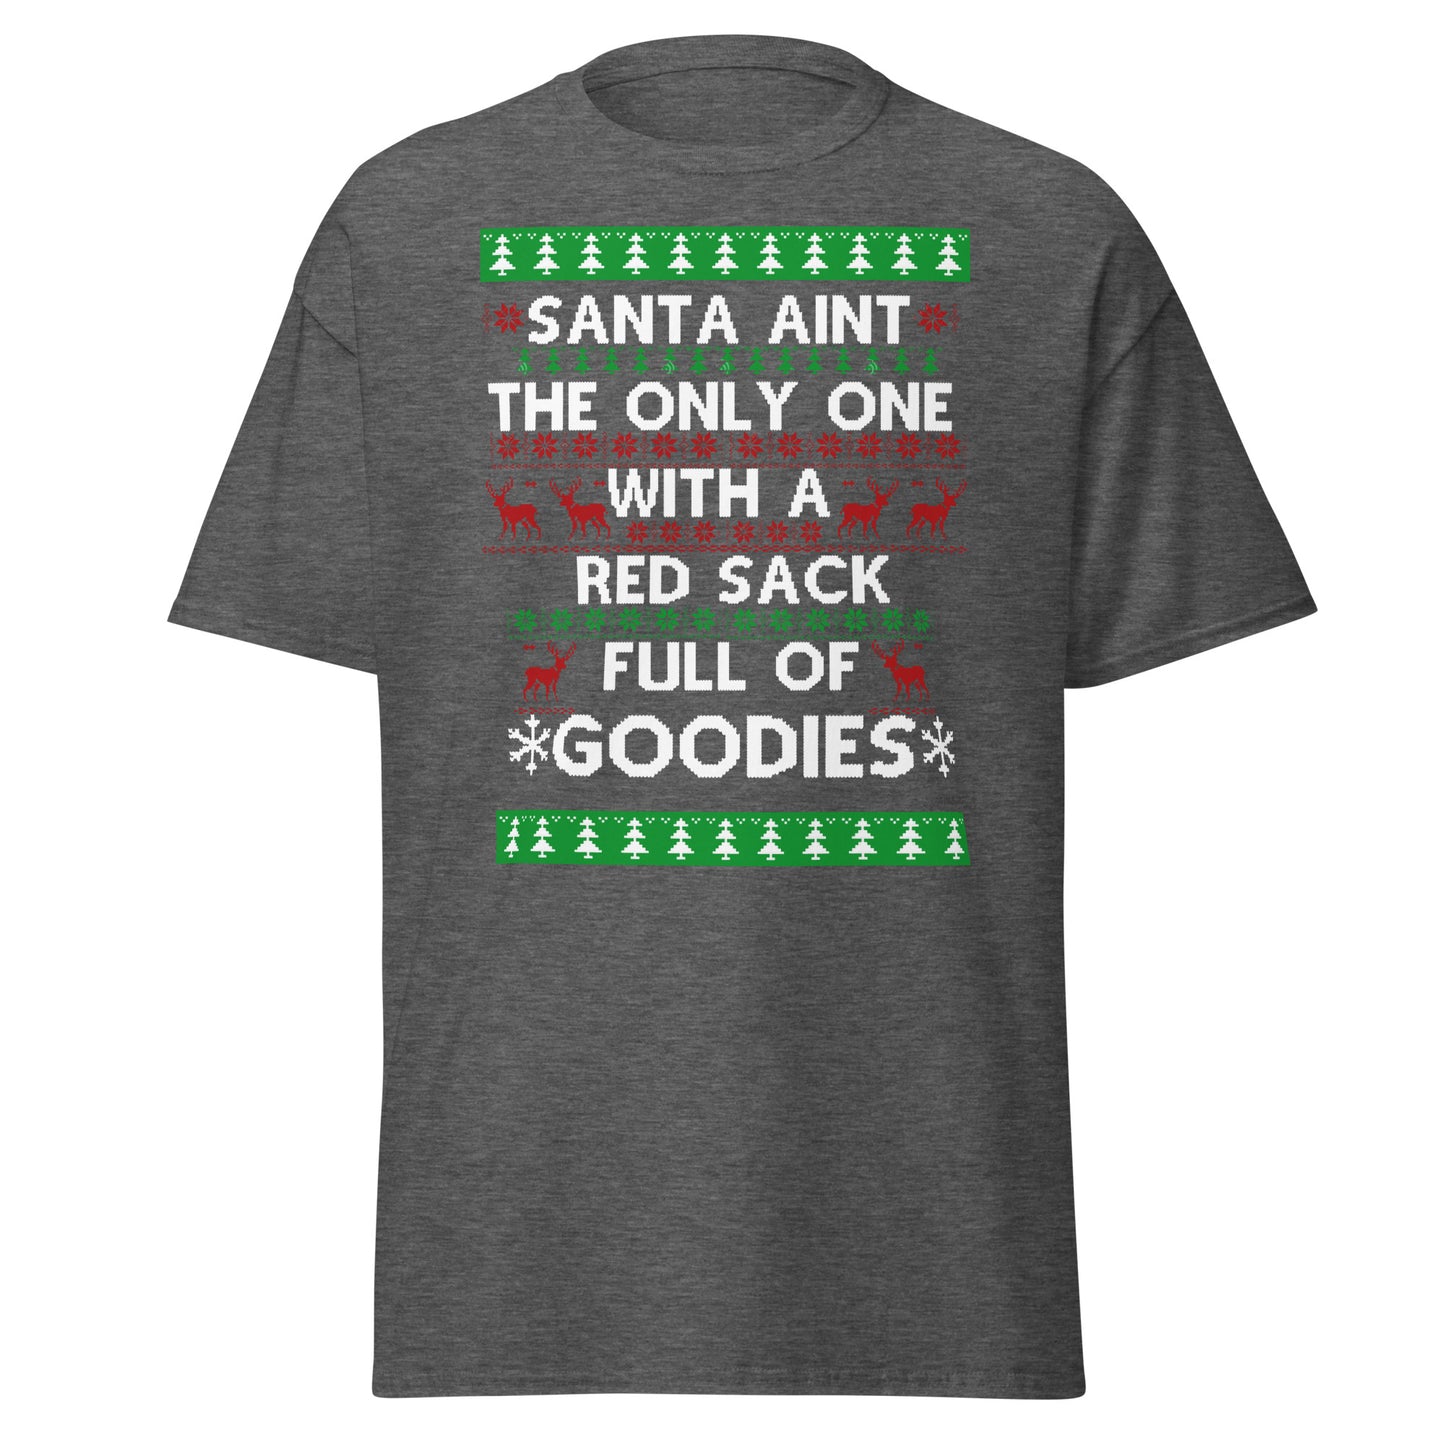 Santa's Sack Comedy T-Shirt - Holiday Laughter Guaranteed"